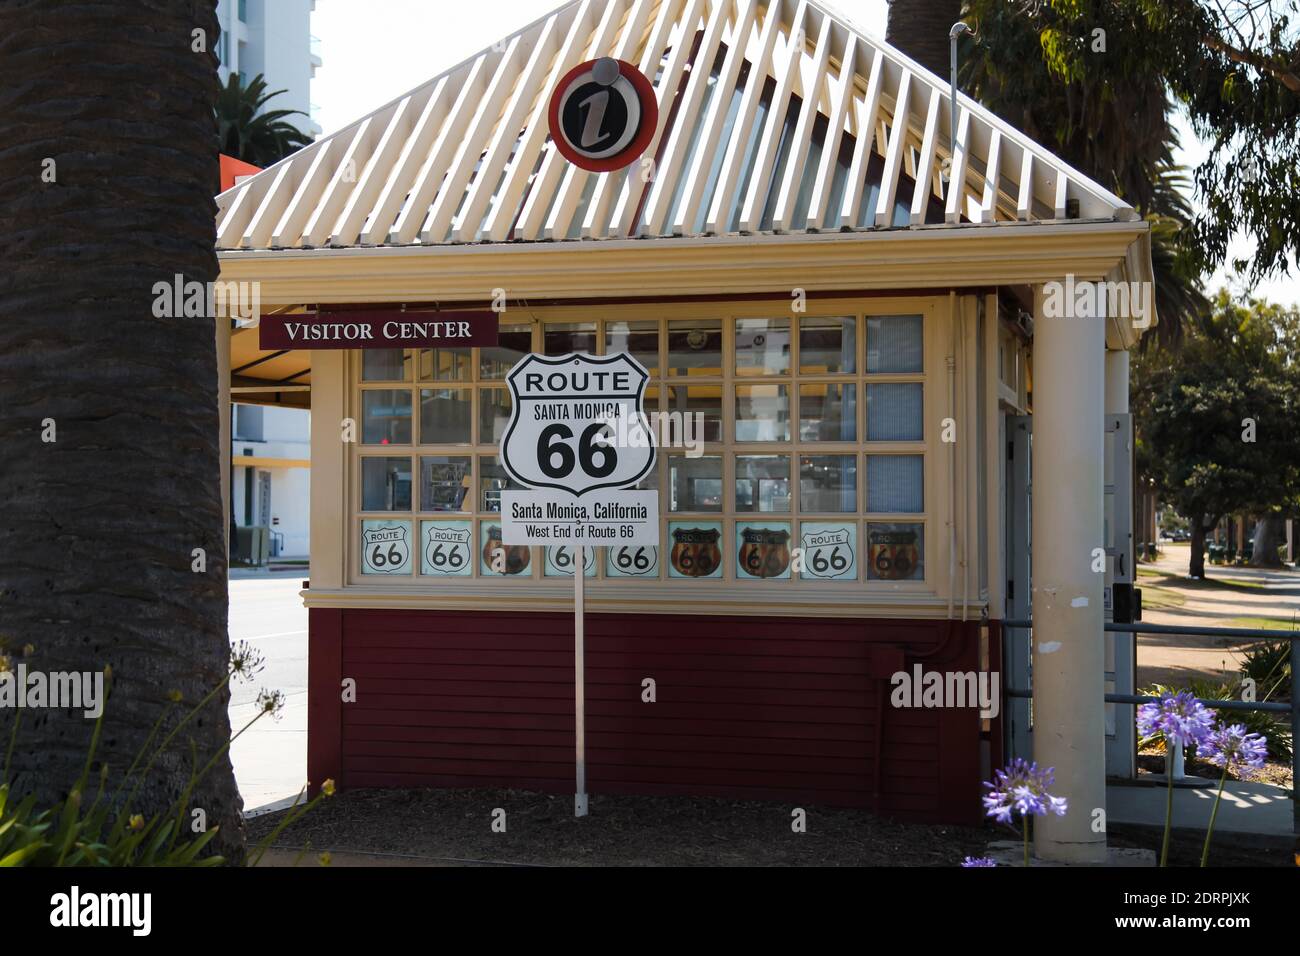 West End der Route 66, Santa Monica, Kalifornien, USA, 2015, Besucherzentrum Stockfoto